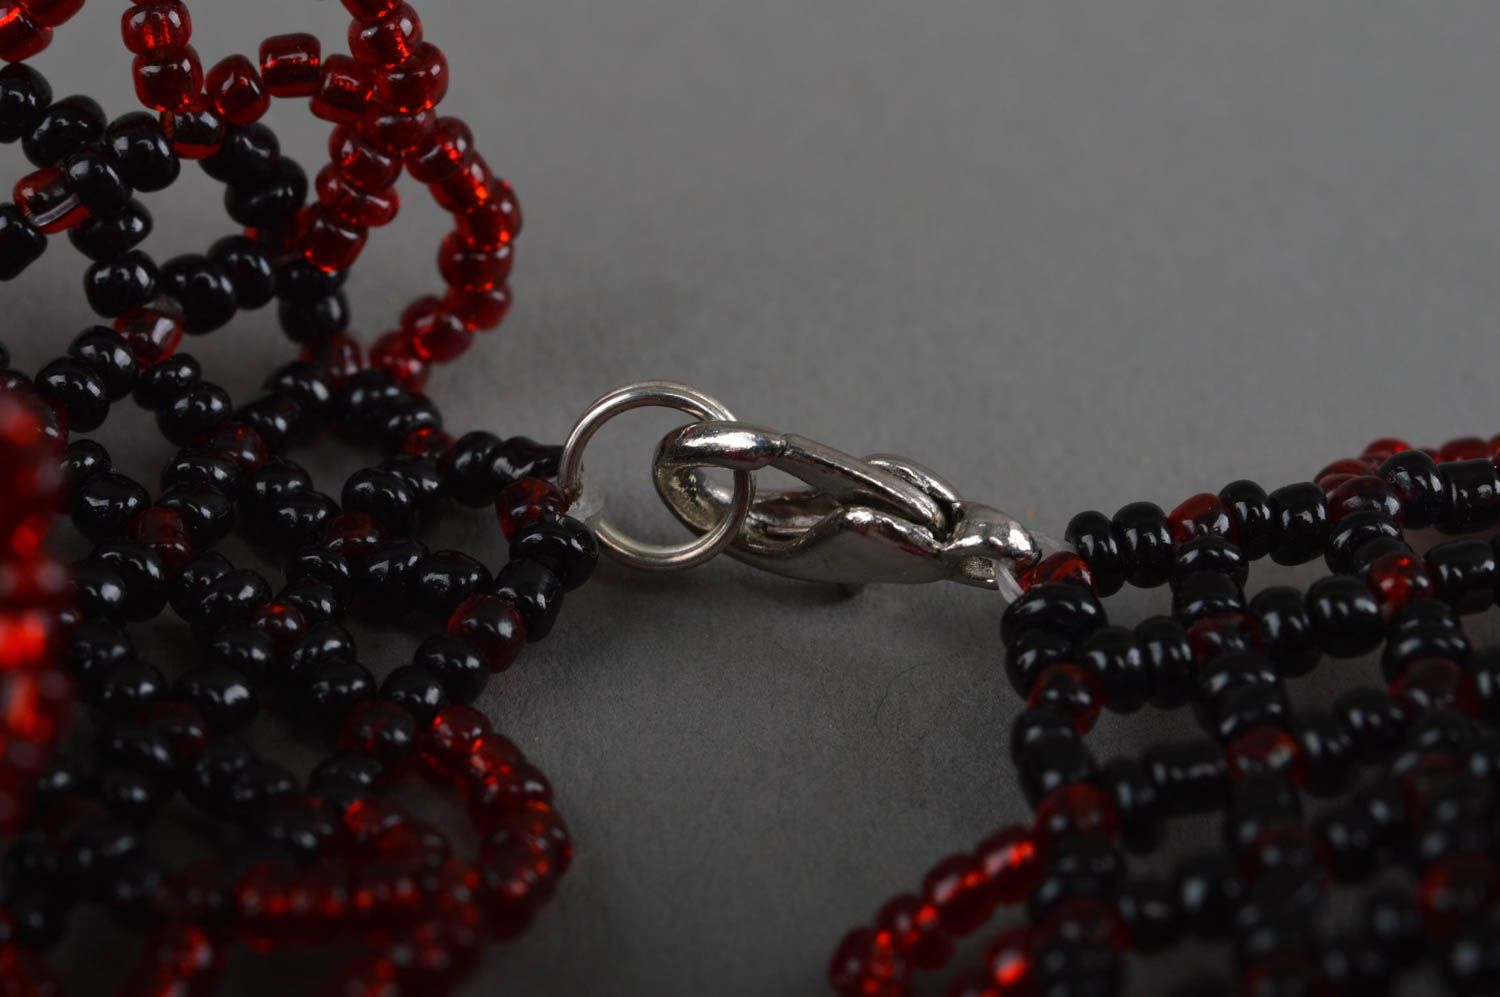 Ожерелье из бисера необычного дизайна черное красивое ручной работы хэнд мейд фото 4